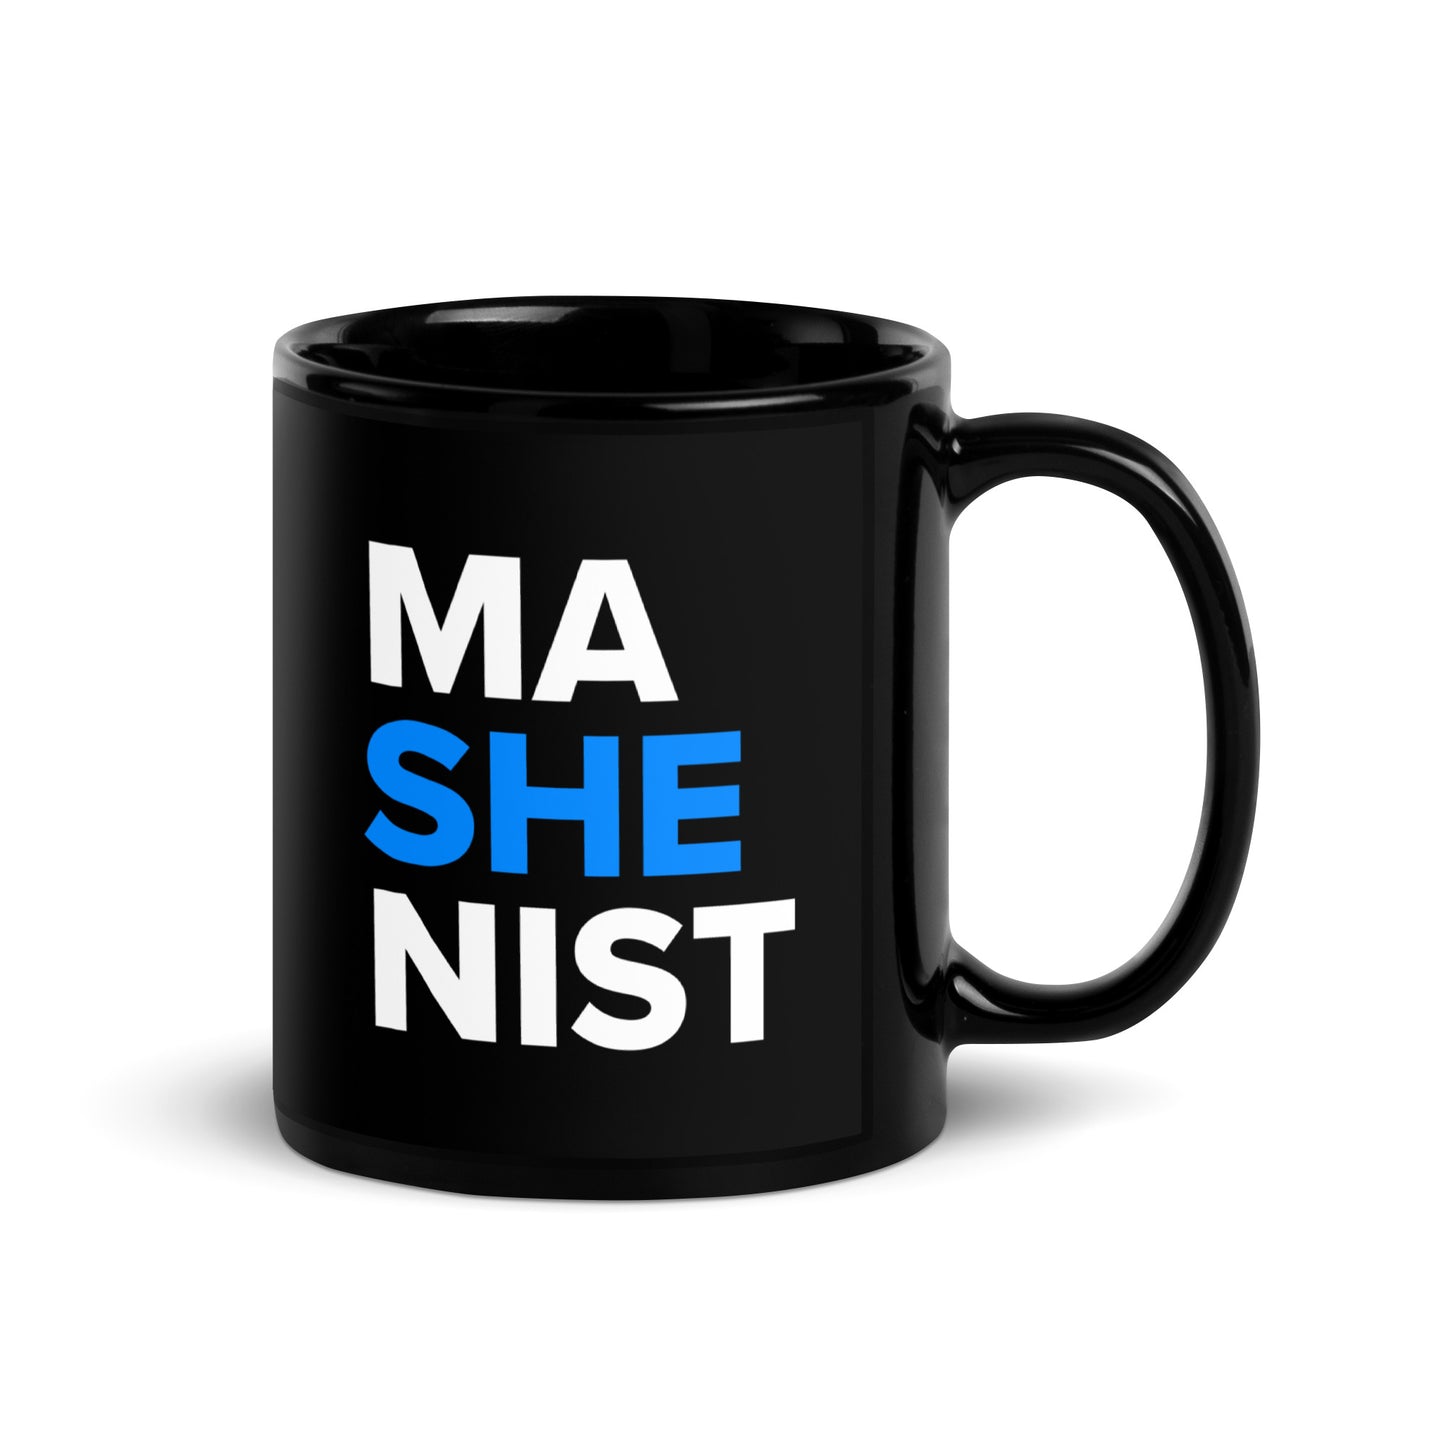 Mashenist Glossy Mug